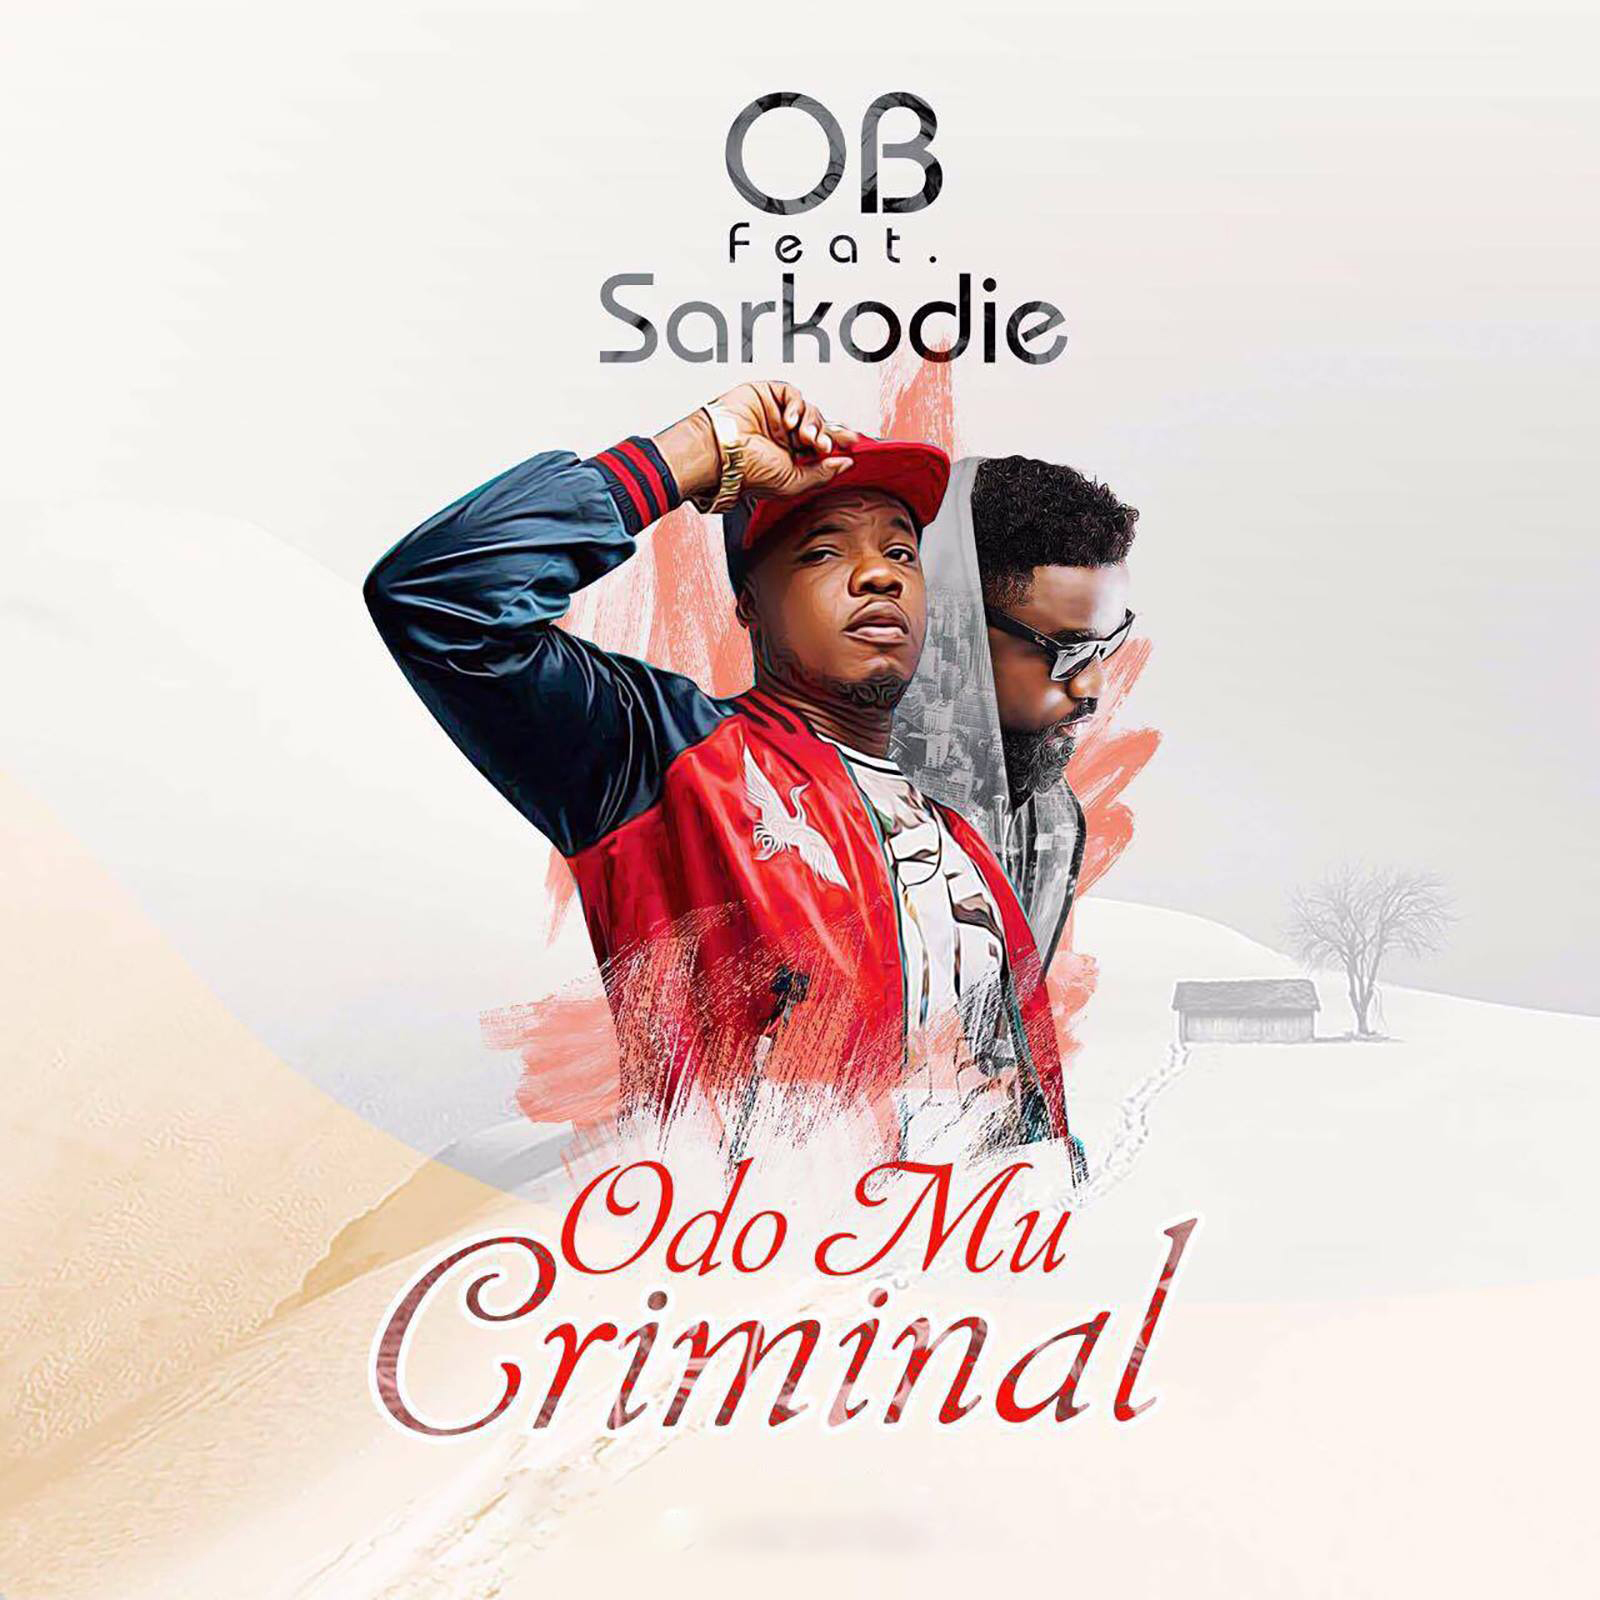 Odo Mu Criminal by OB feat. Sarkodie